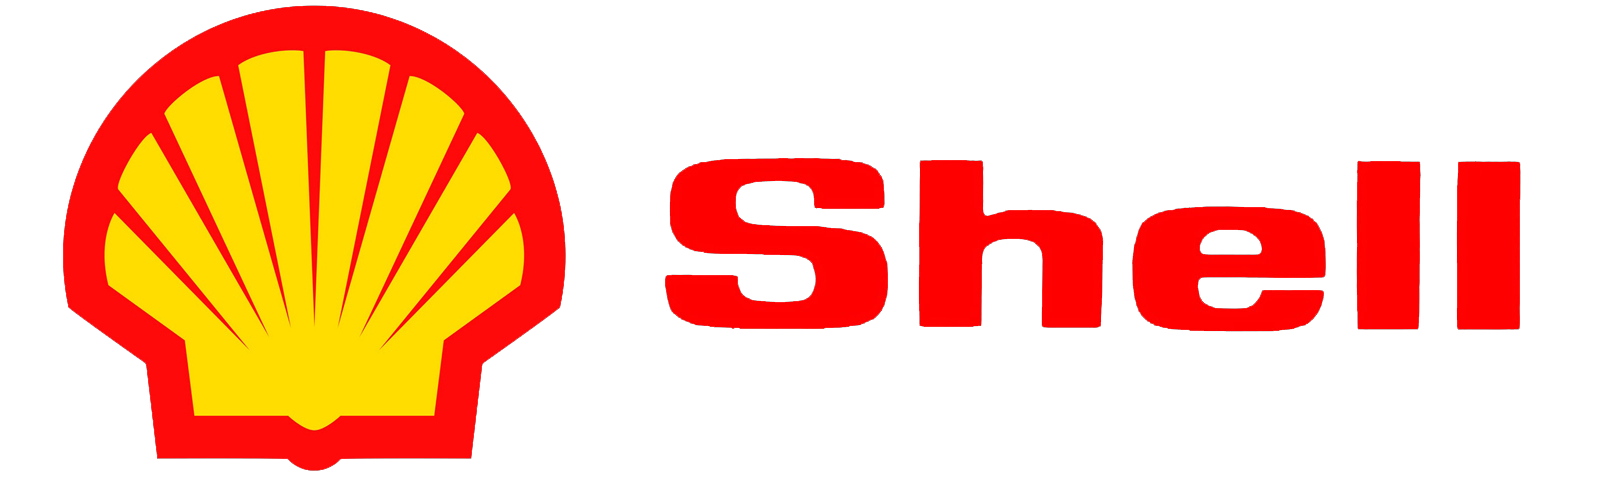 Логотип Шелл Ойл